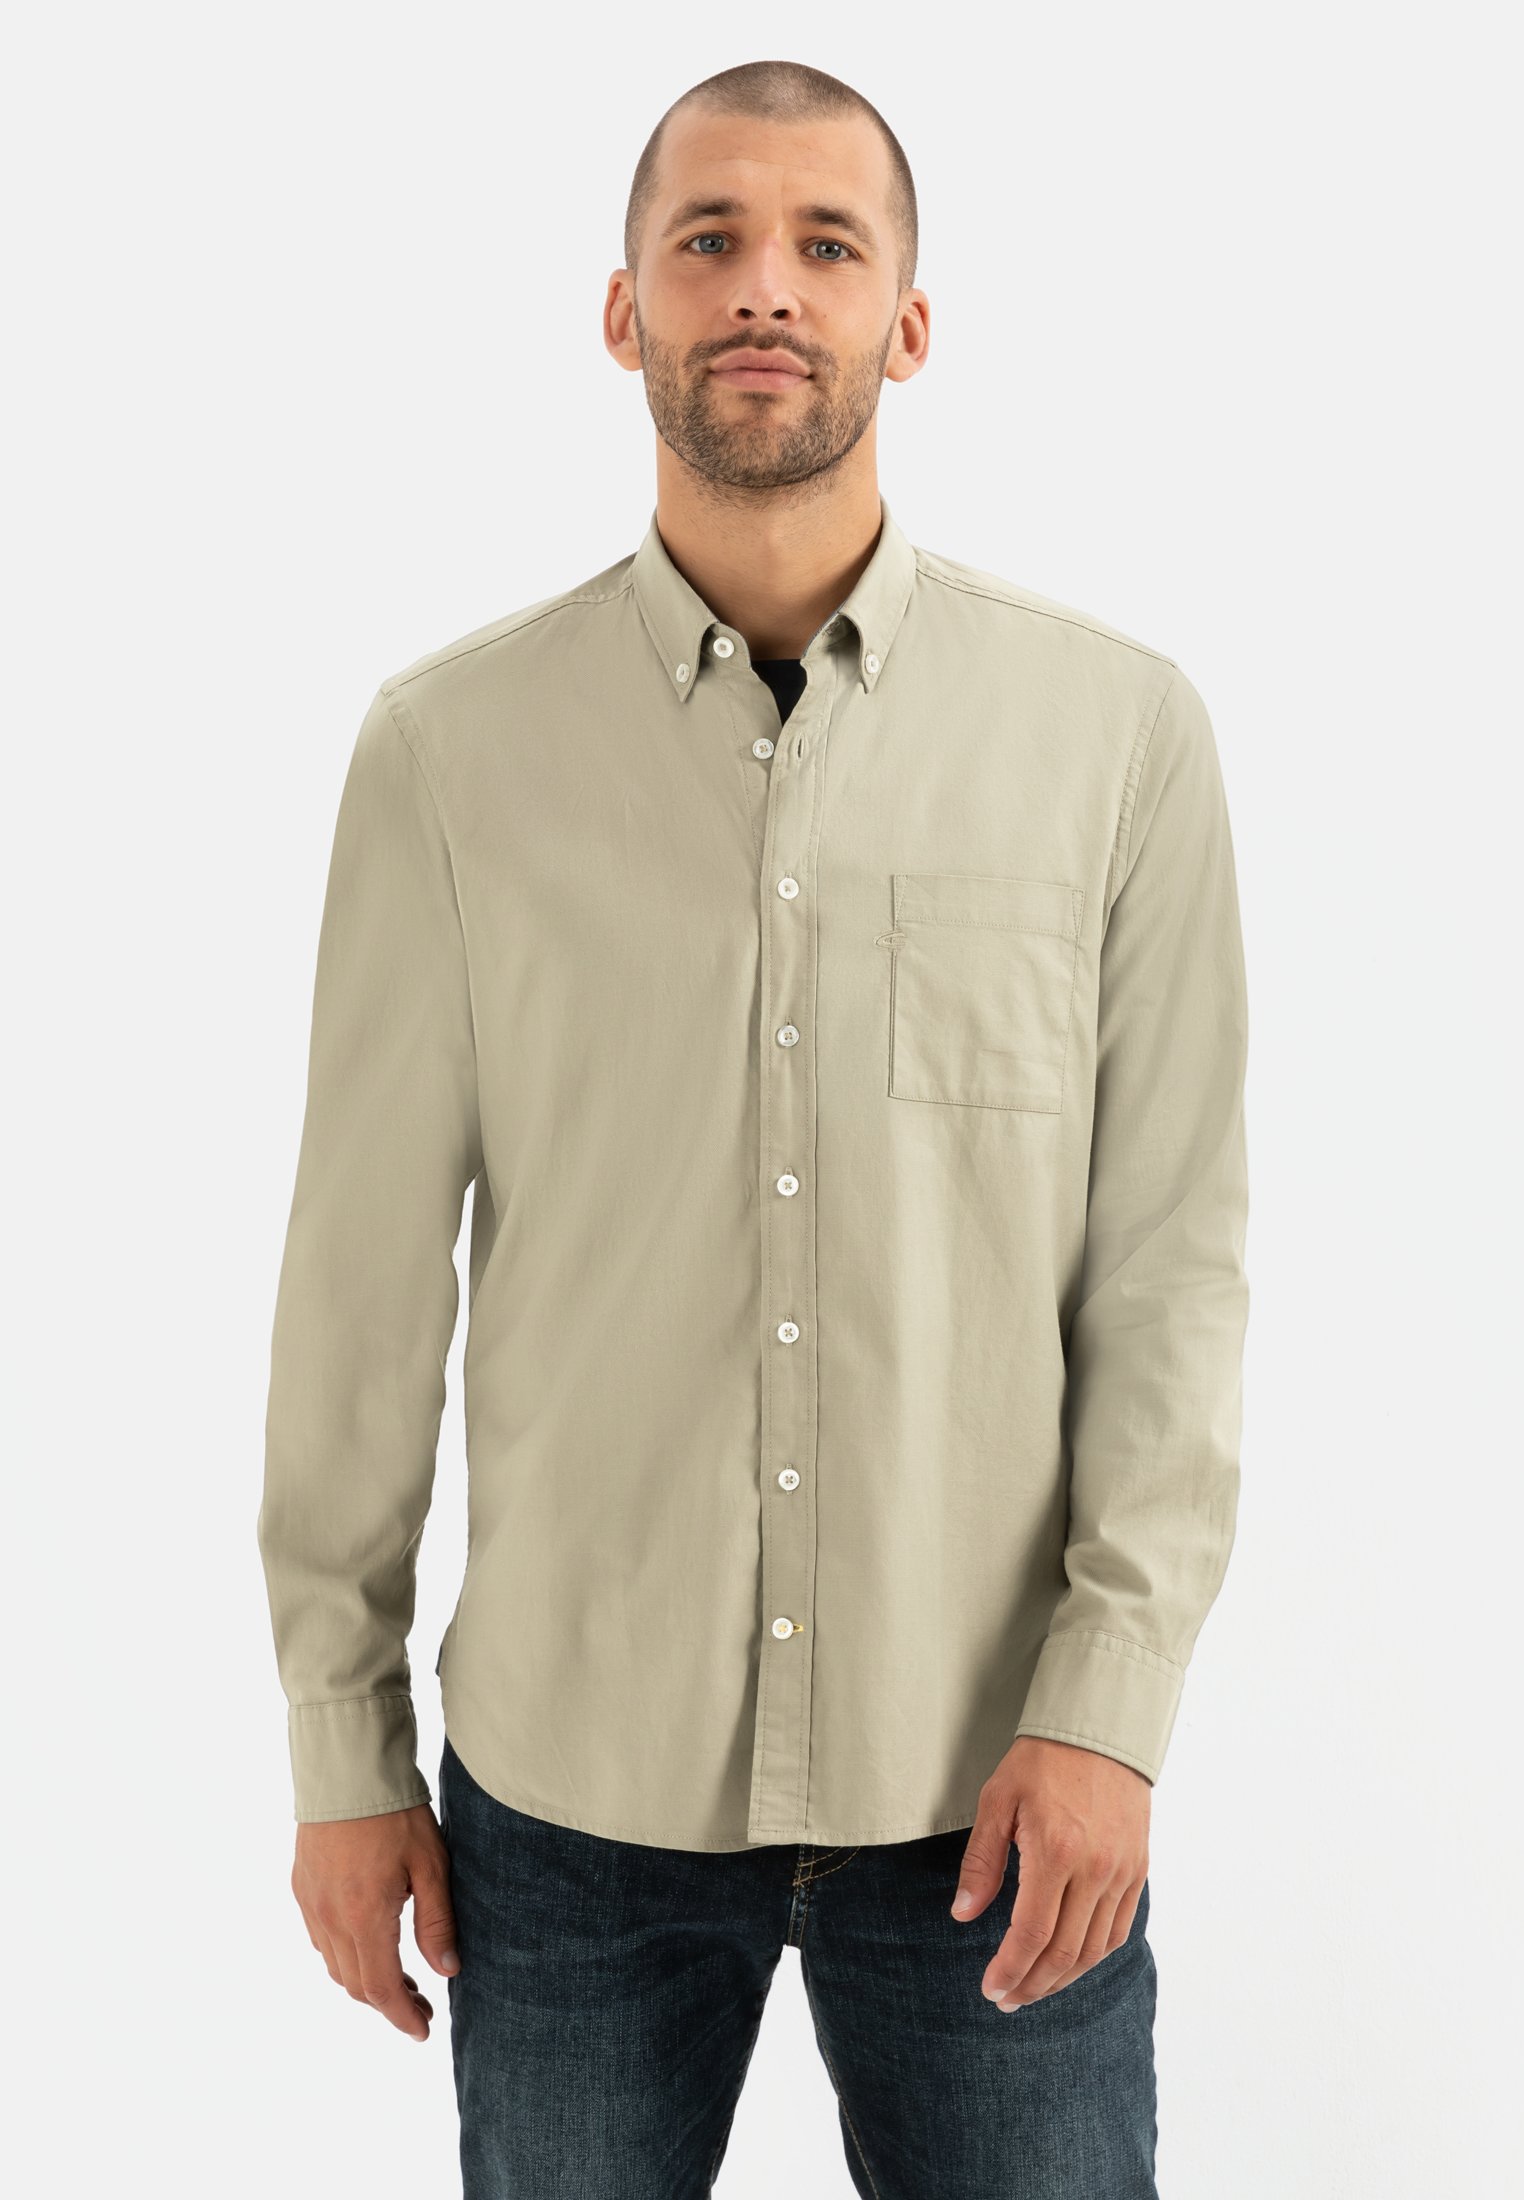 Long sleeve shirt for Herren in Light Khaki | S